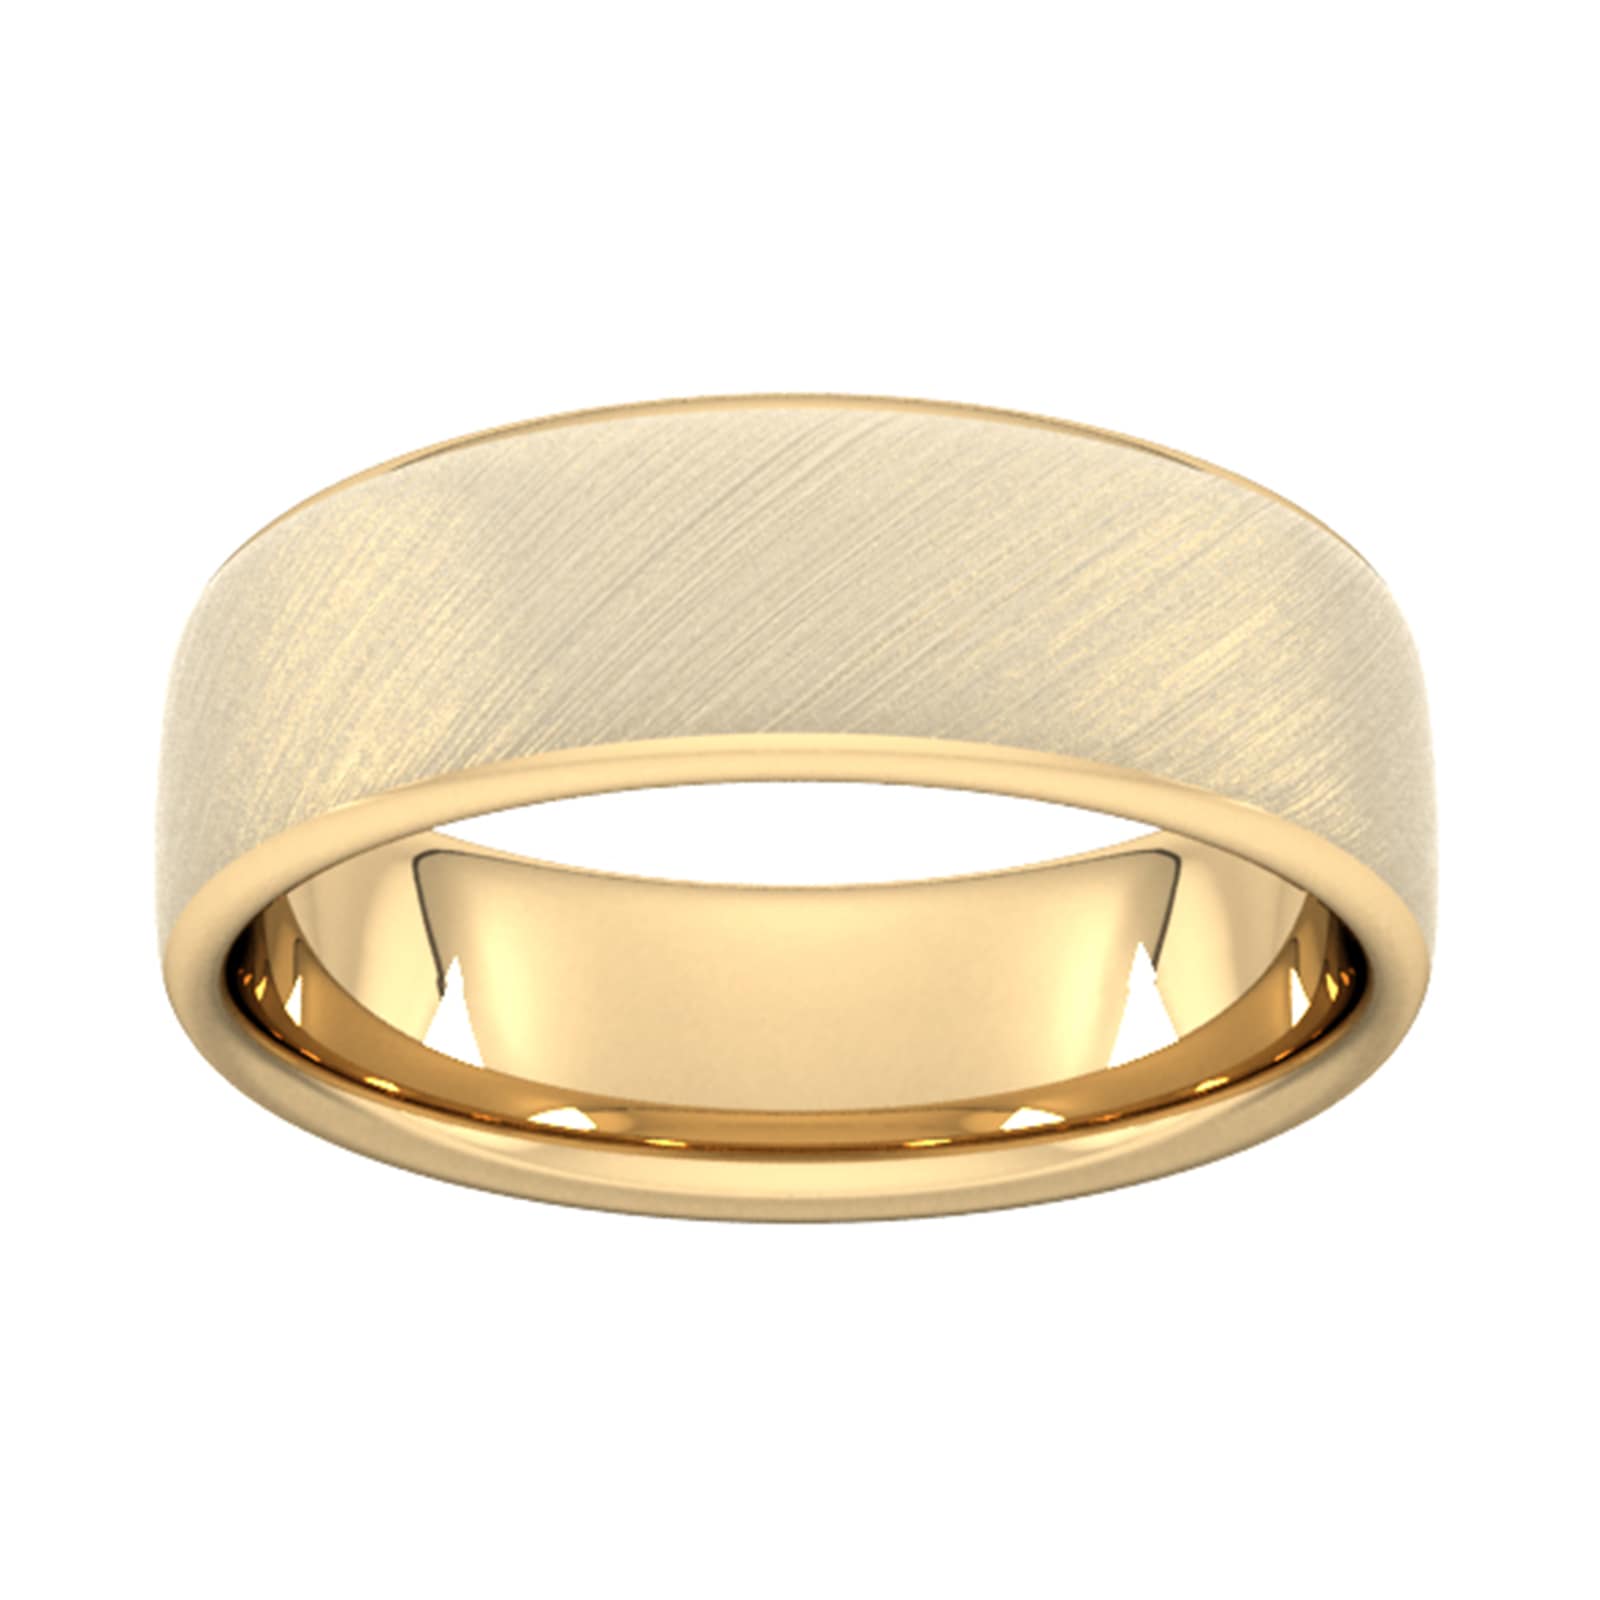 7mm Slight Court Heavy Diagonal Matt Finish Wedding Ring In 9 Carat Yellow Gold - Ring Size Y